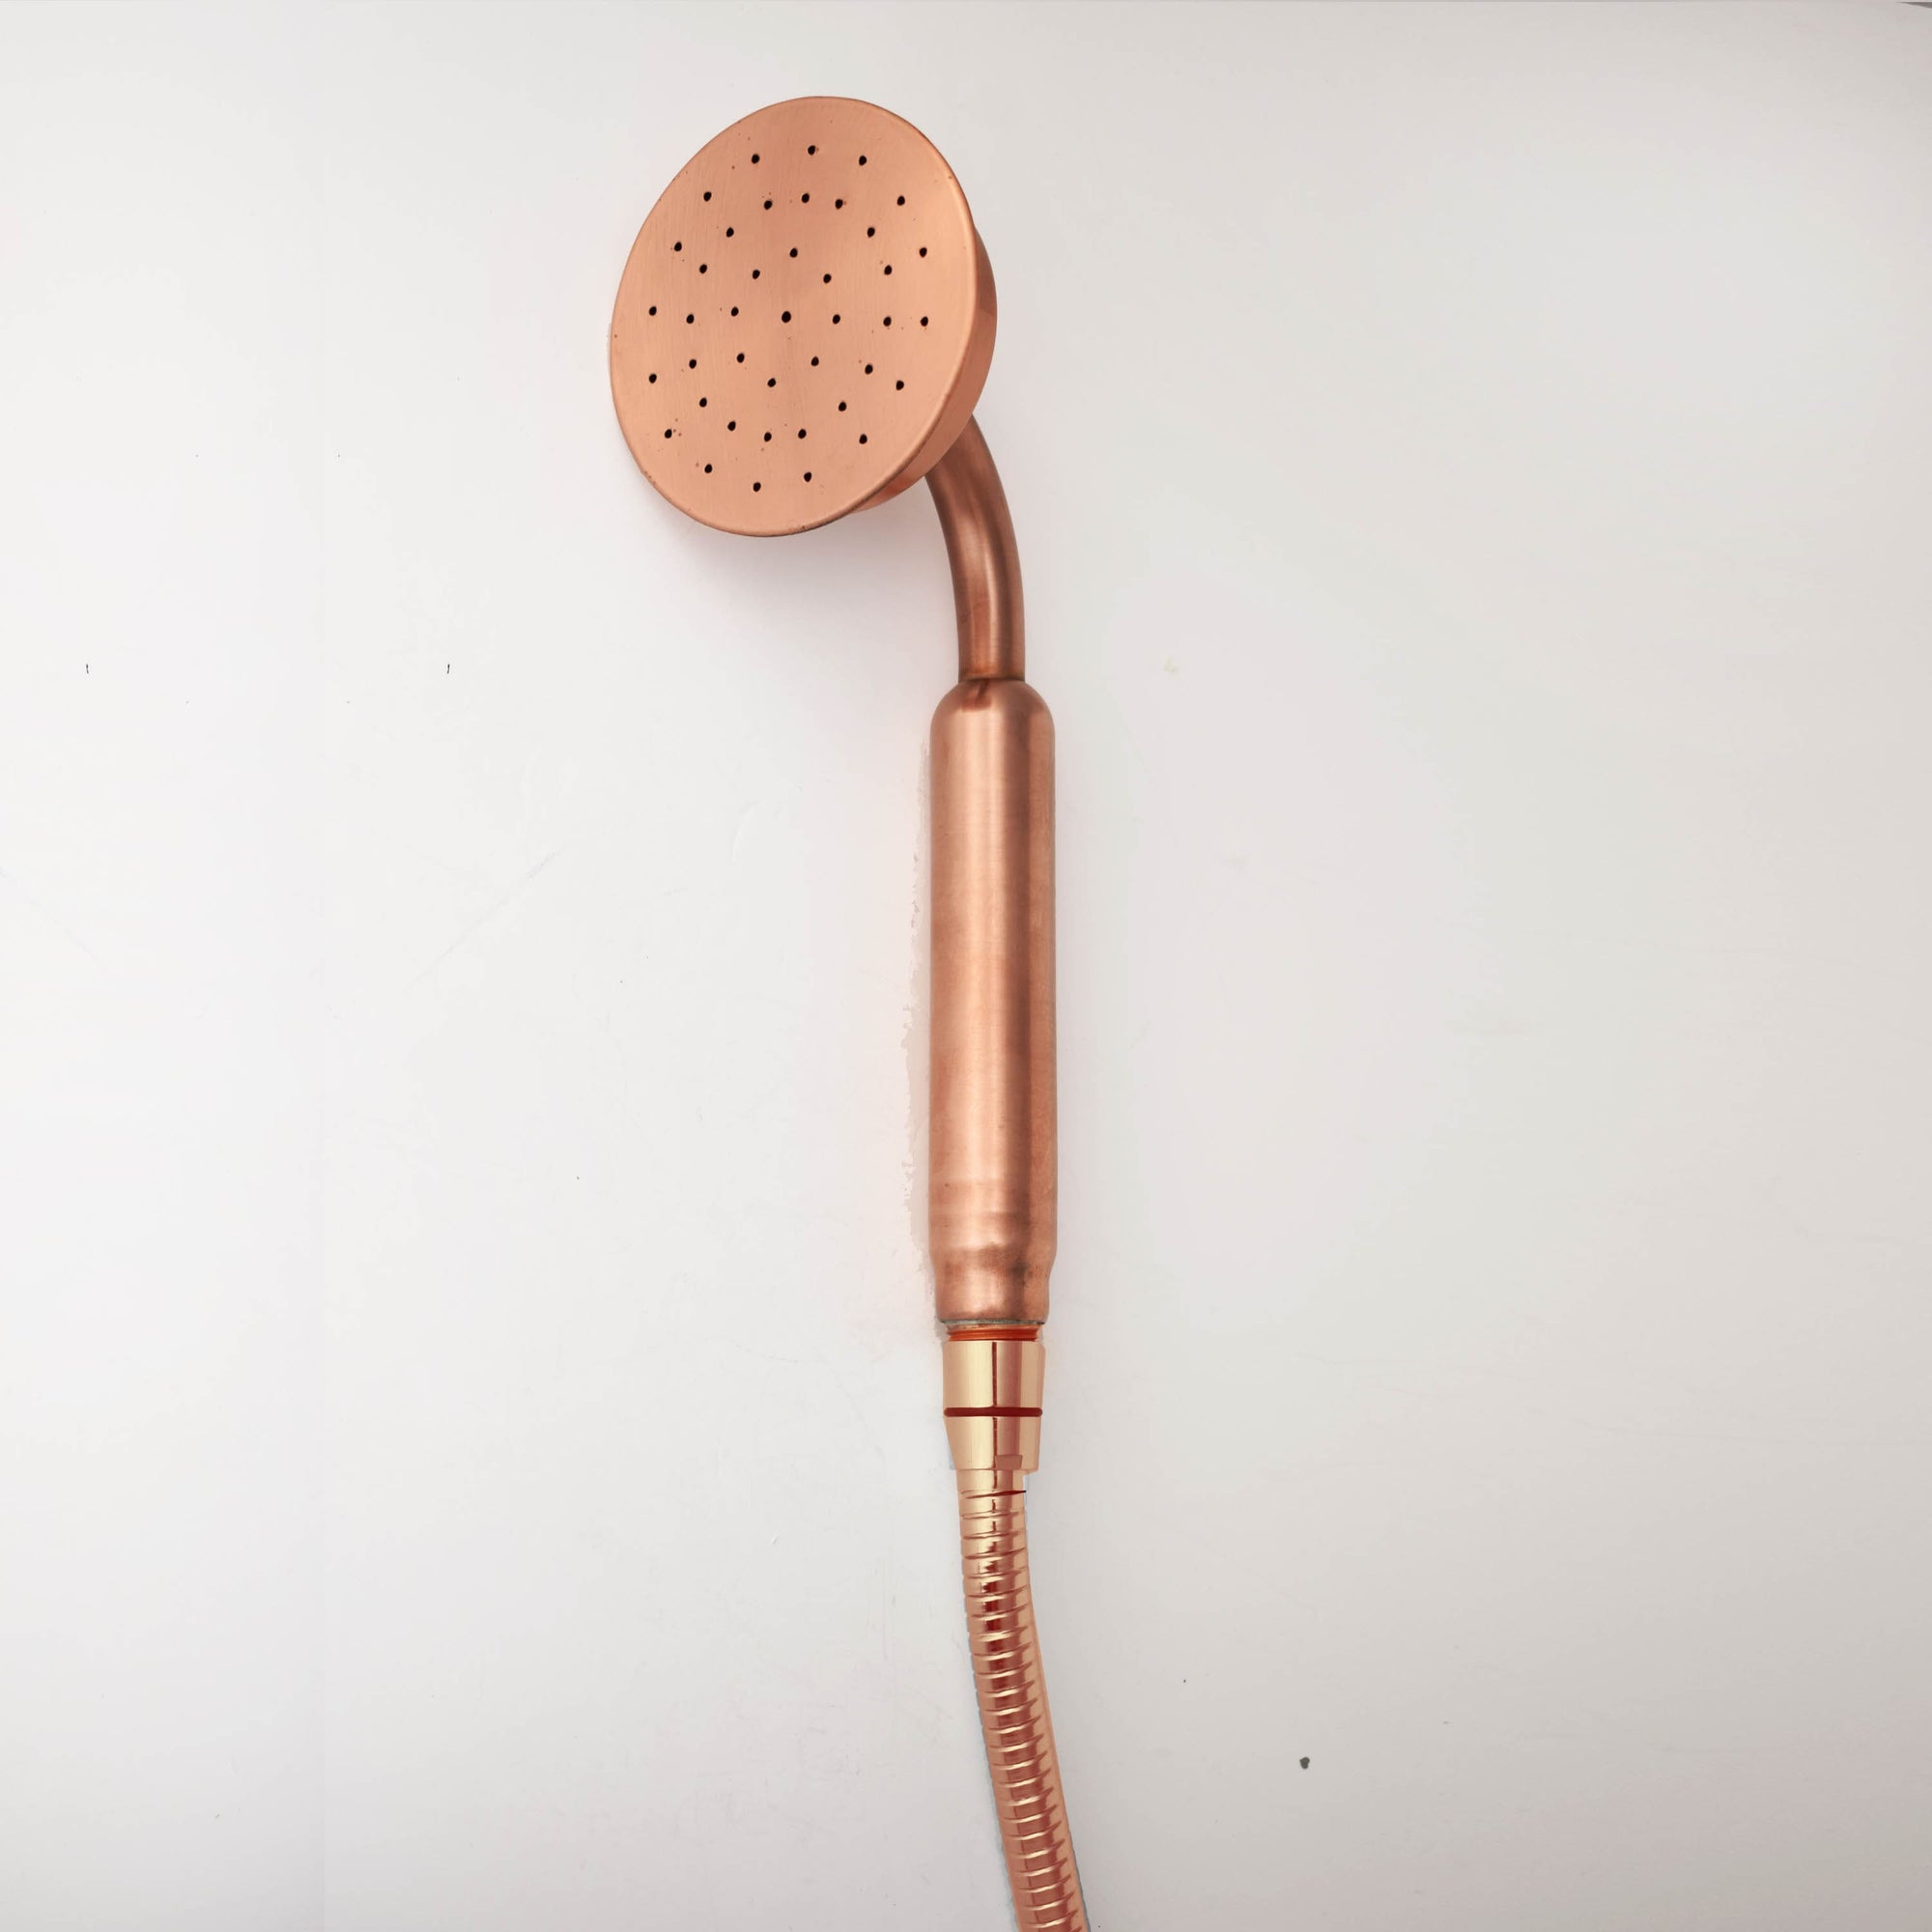 Solid Copper Handheld Shower Head Attachment - Proper Copper Design